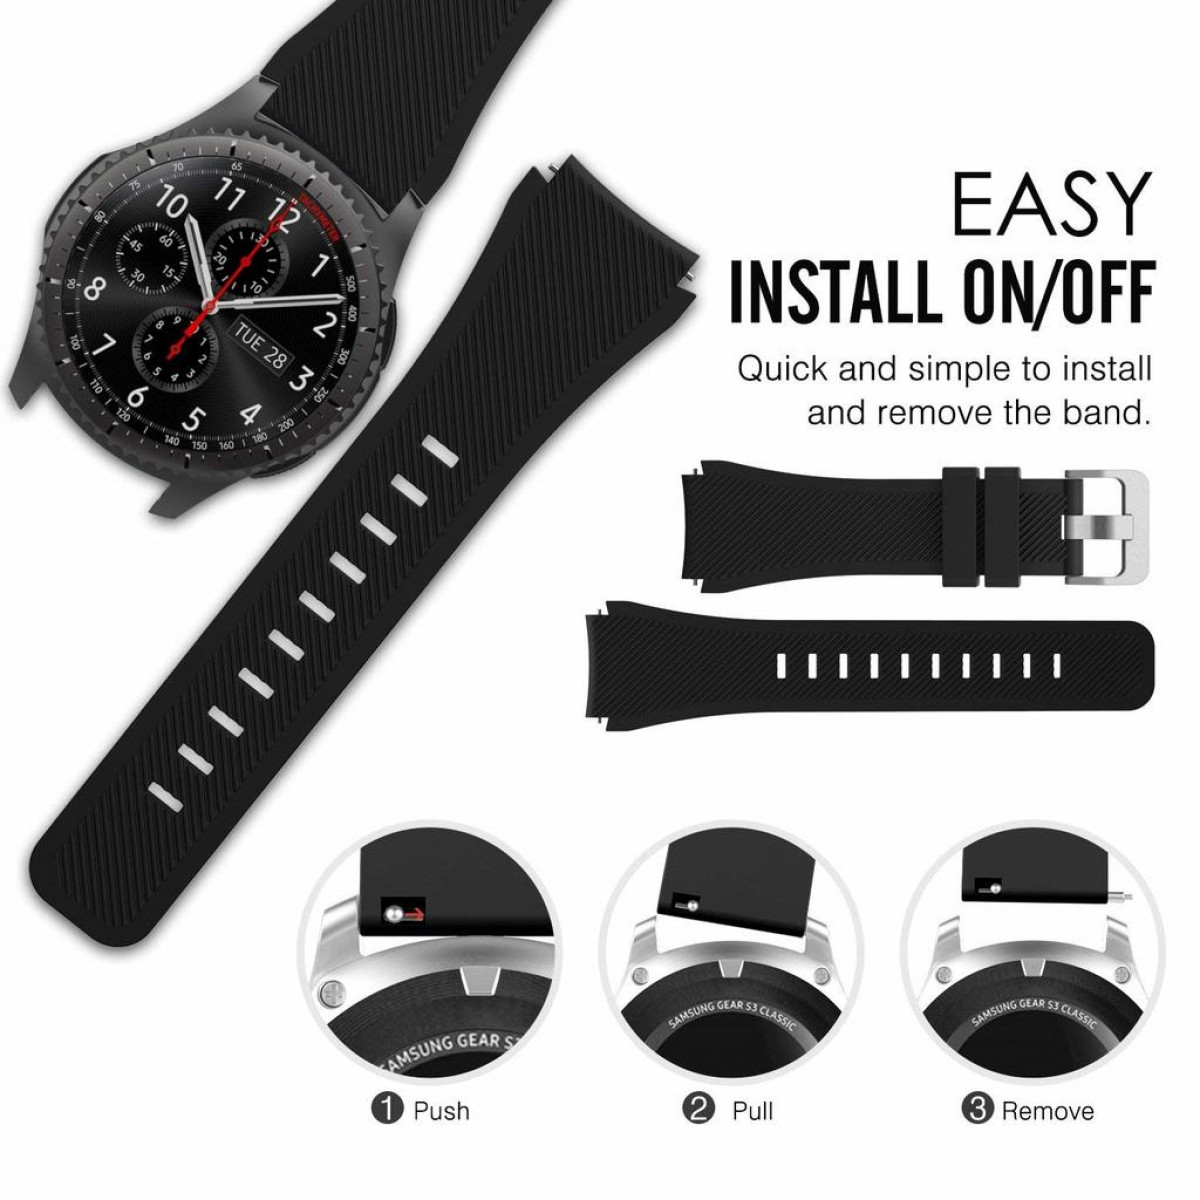 INF Armband für Samsung Gear Frontier/Classic Samsung S3 Gear S3, Ersatzb, Ersatzarmband, Uhrenarmband Schwarz Ersatzband, 22mm